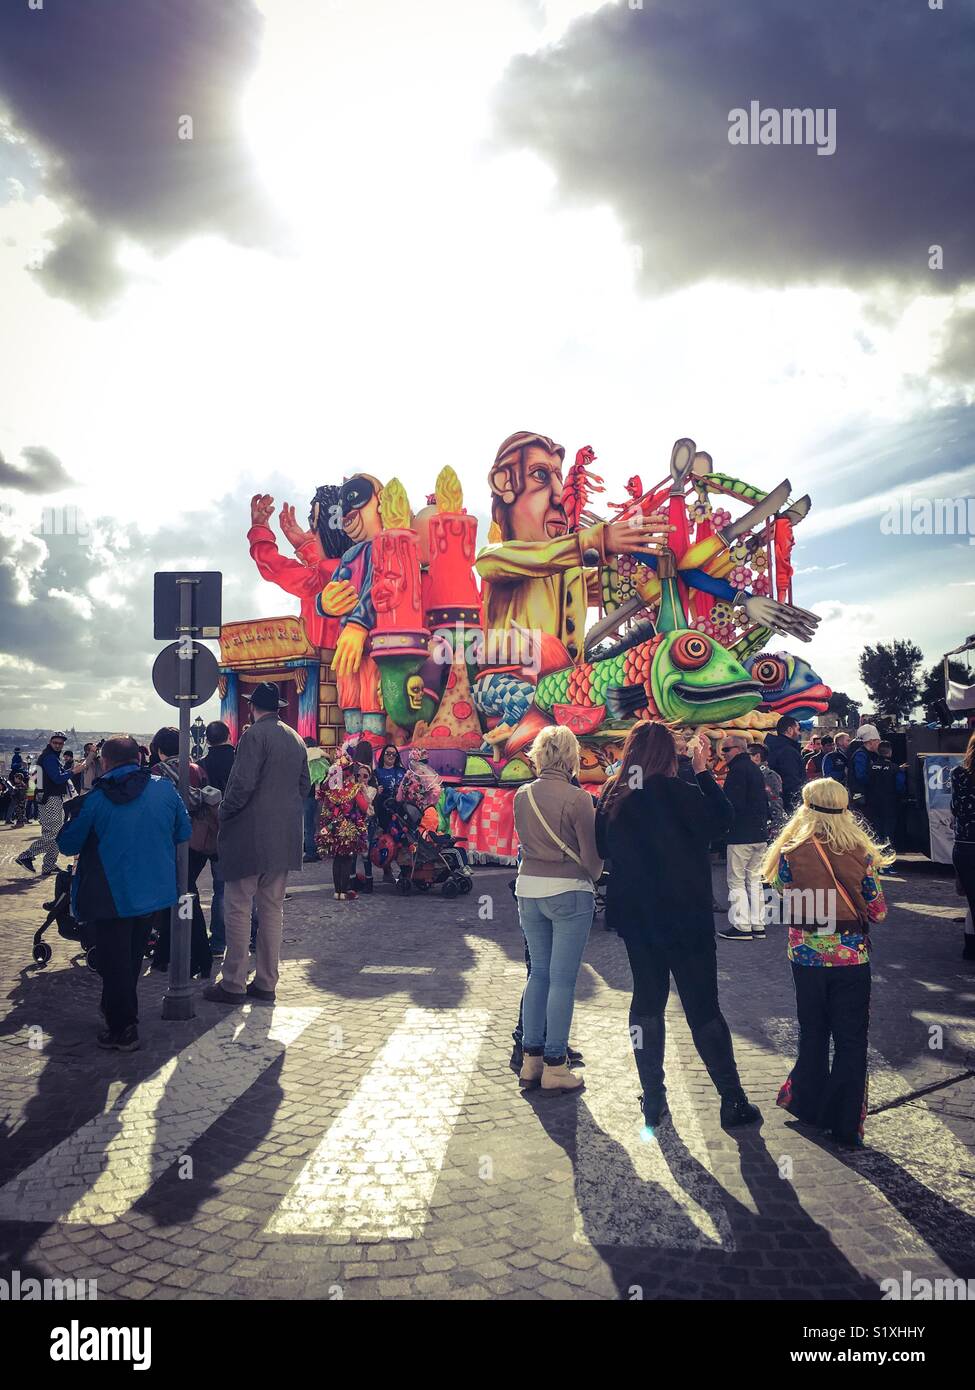 Carnival flotteur avec mannequins, Castille square, La Valette, Malte 2018 Banque D'Images